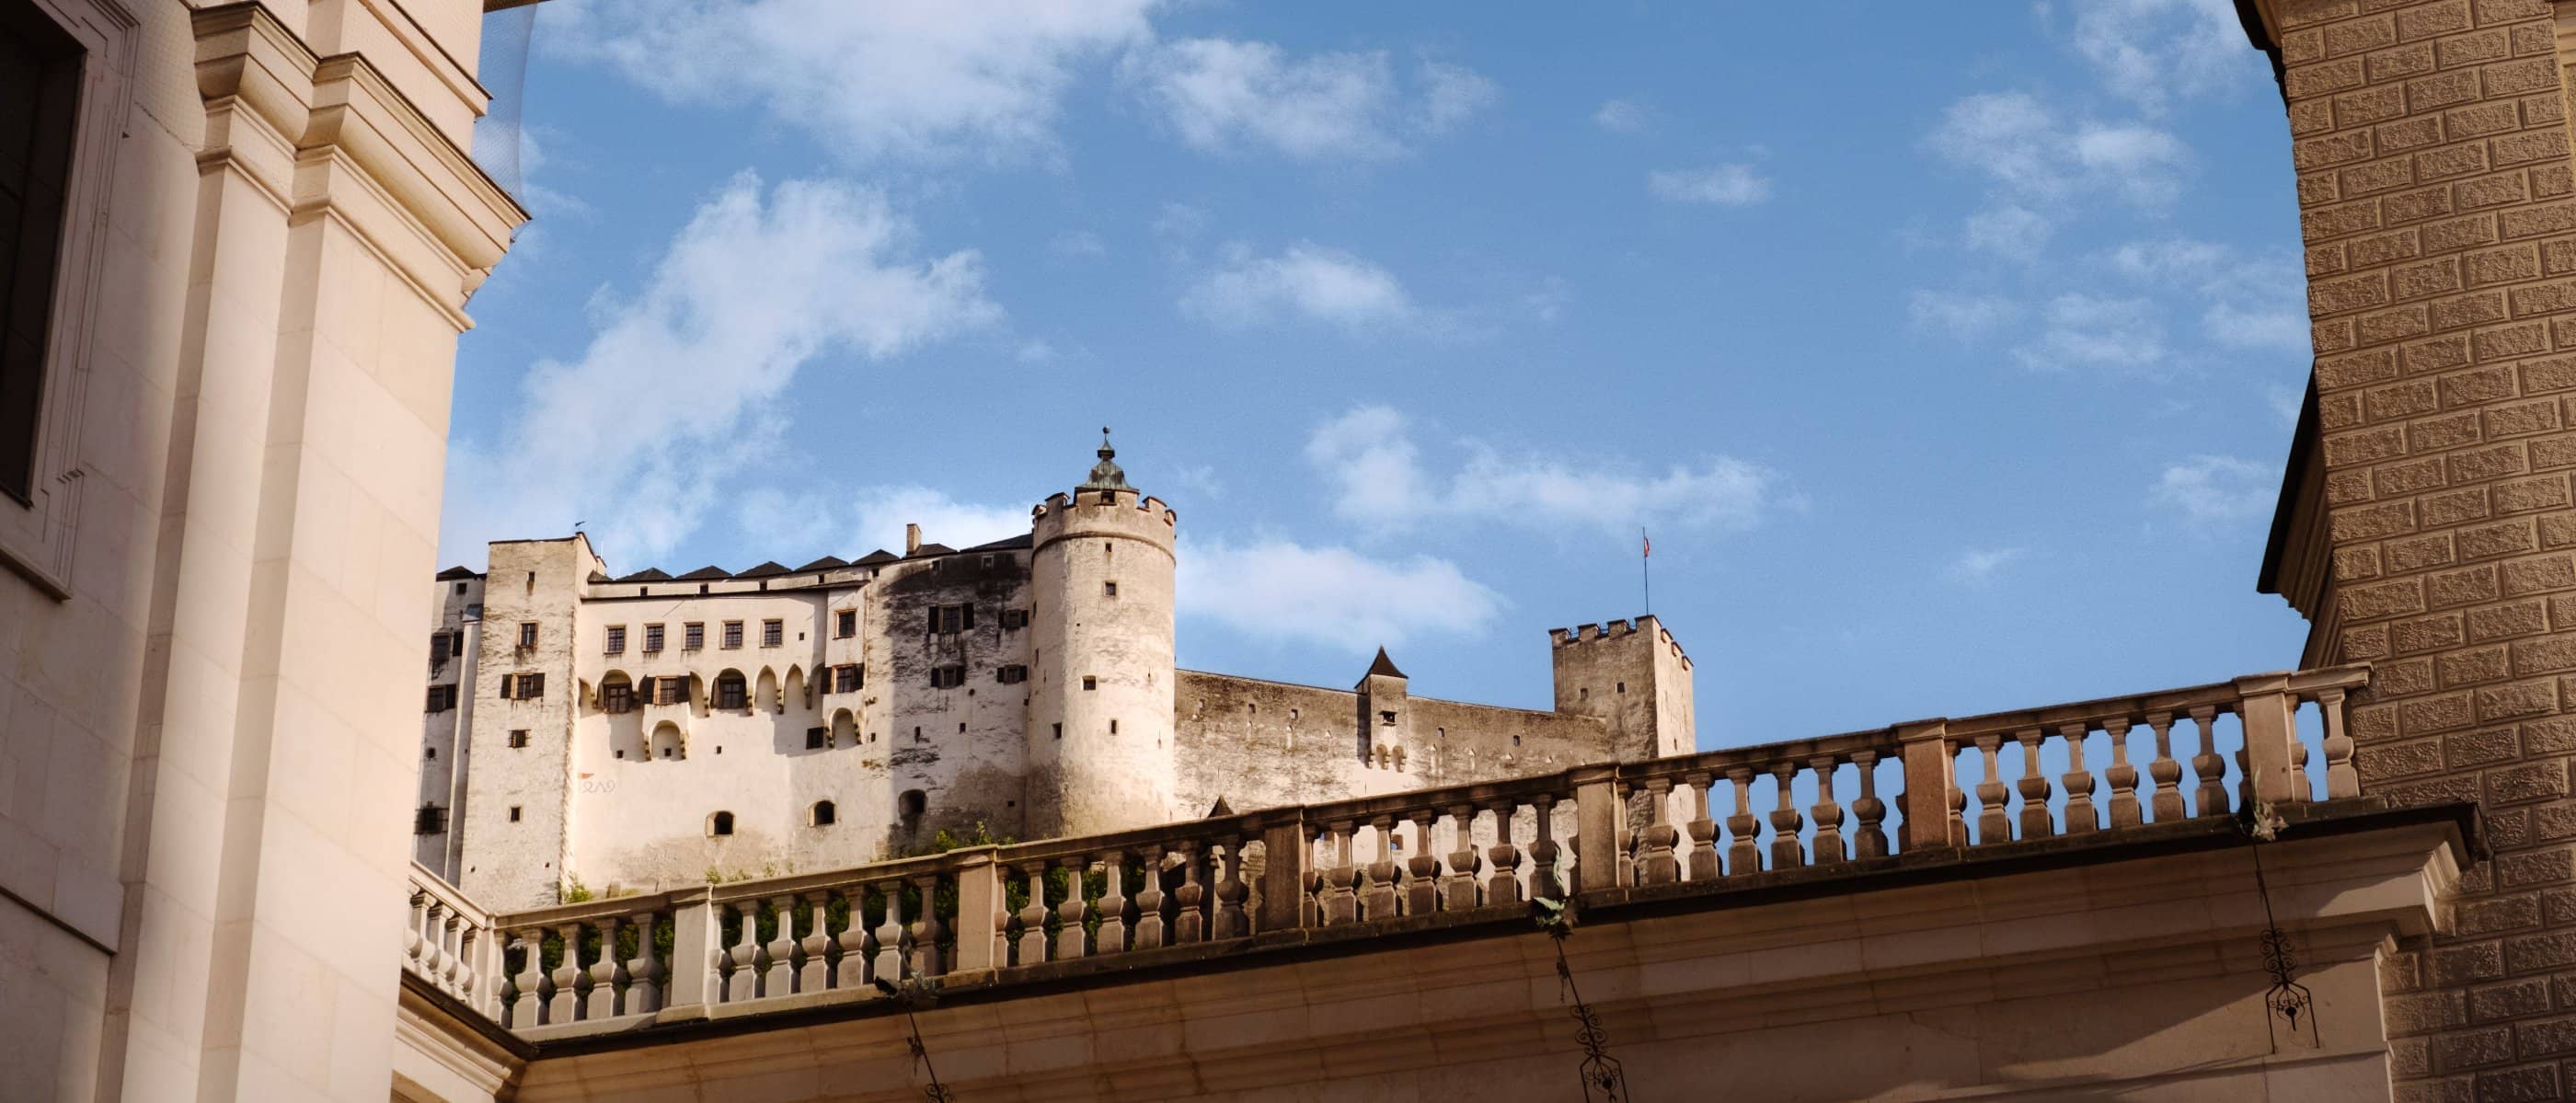 Dieses Bild zeigt die Festung Hohen Salzburg